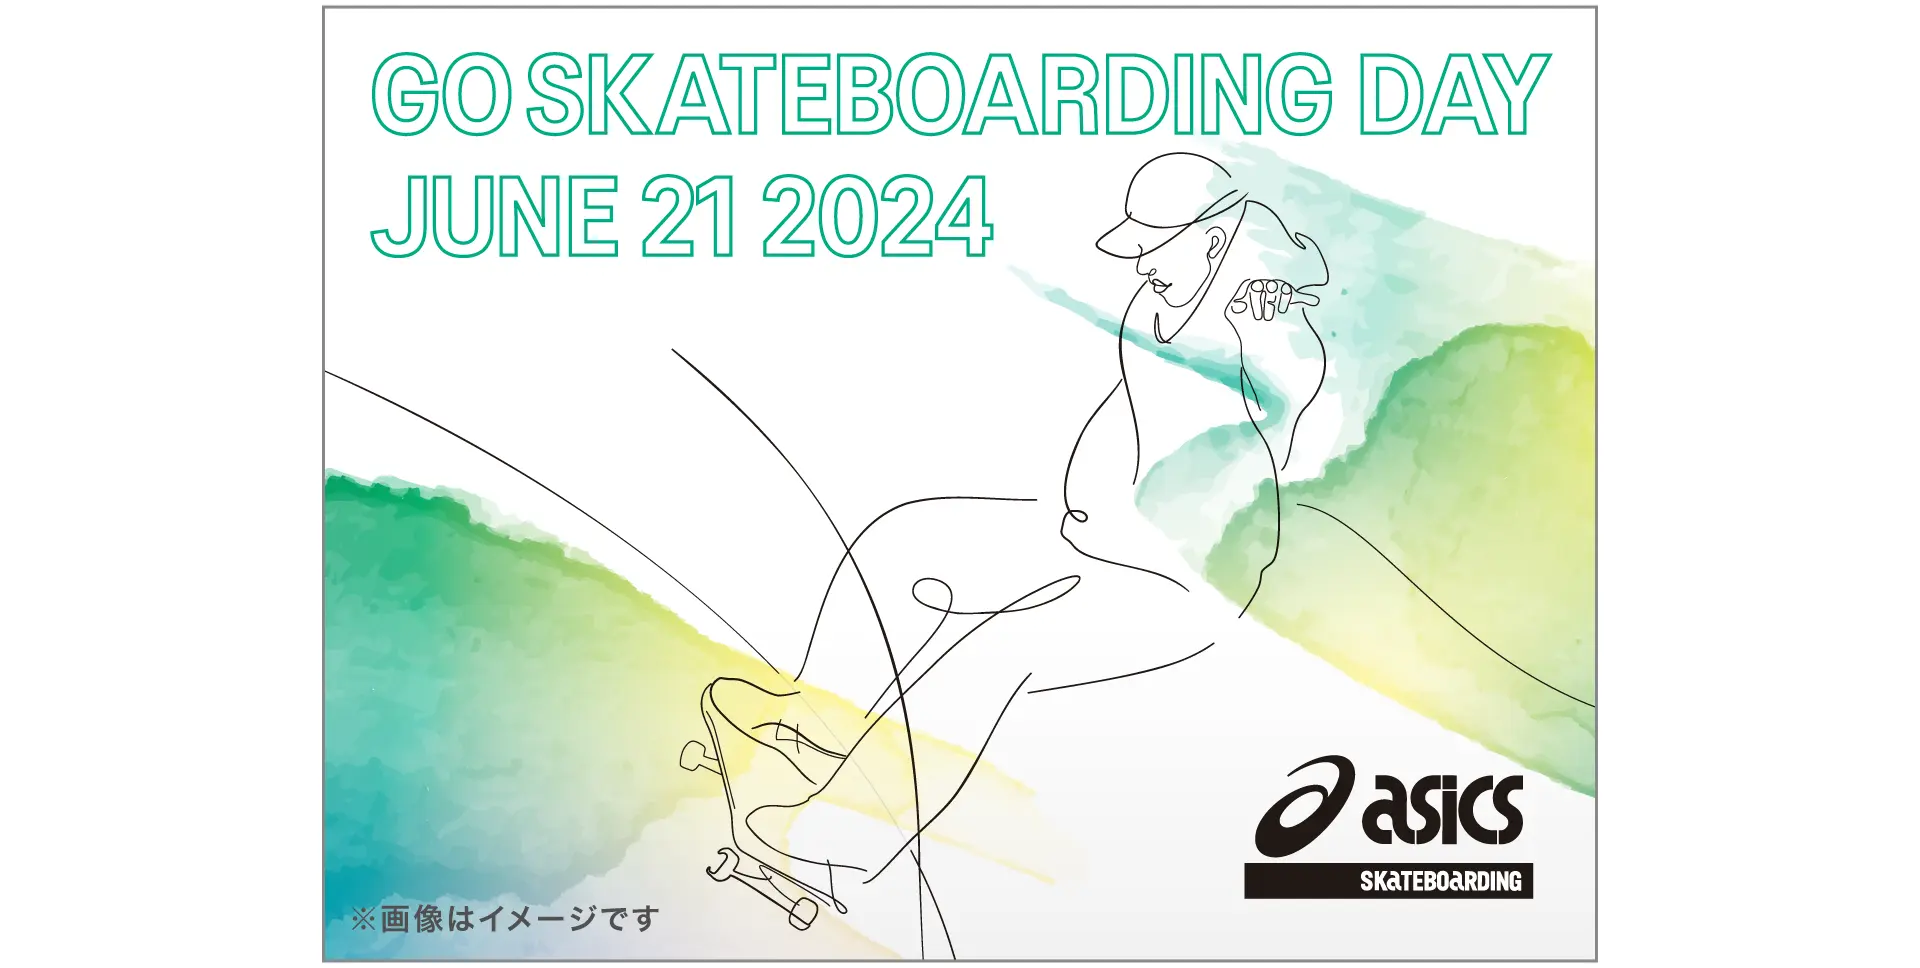 GO SKATEBOARDING DAY JUNE 21 2024